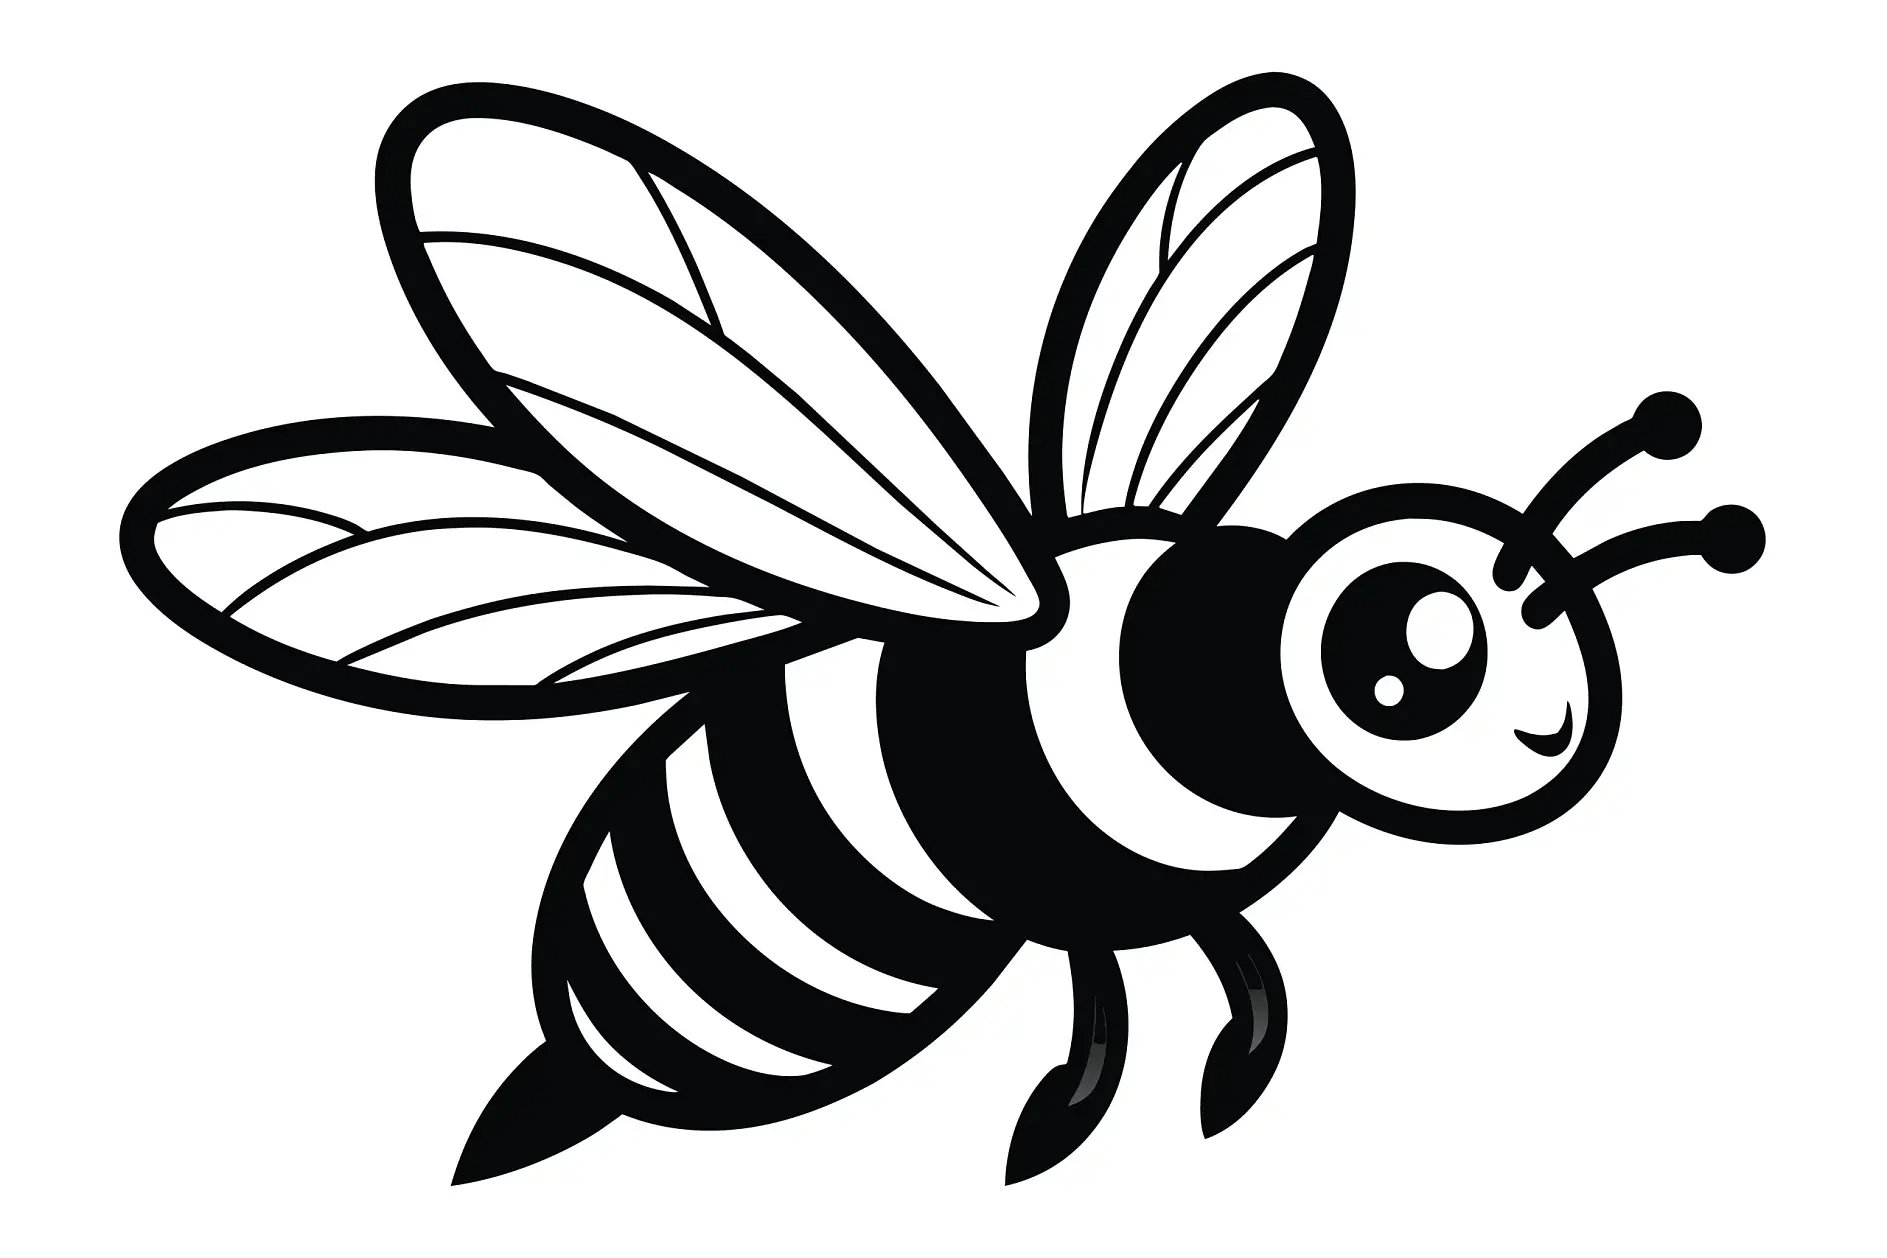 Ausmalbild fliegende Biene mit gestreiftem Körper und großen Flügeln